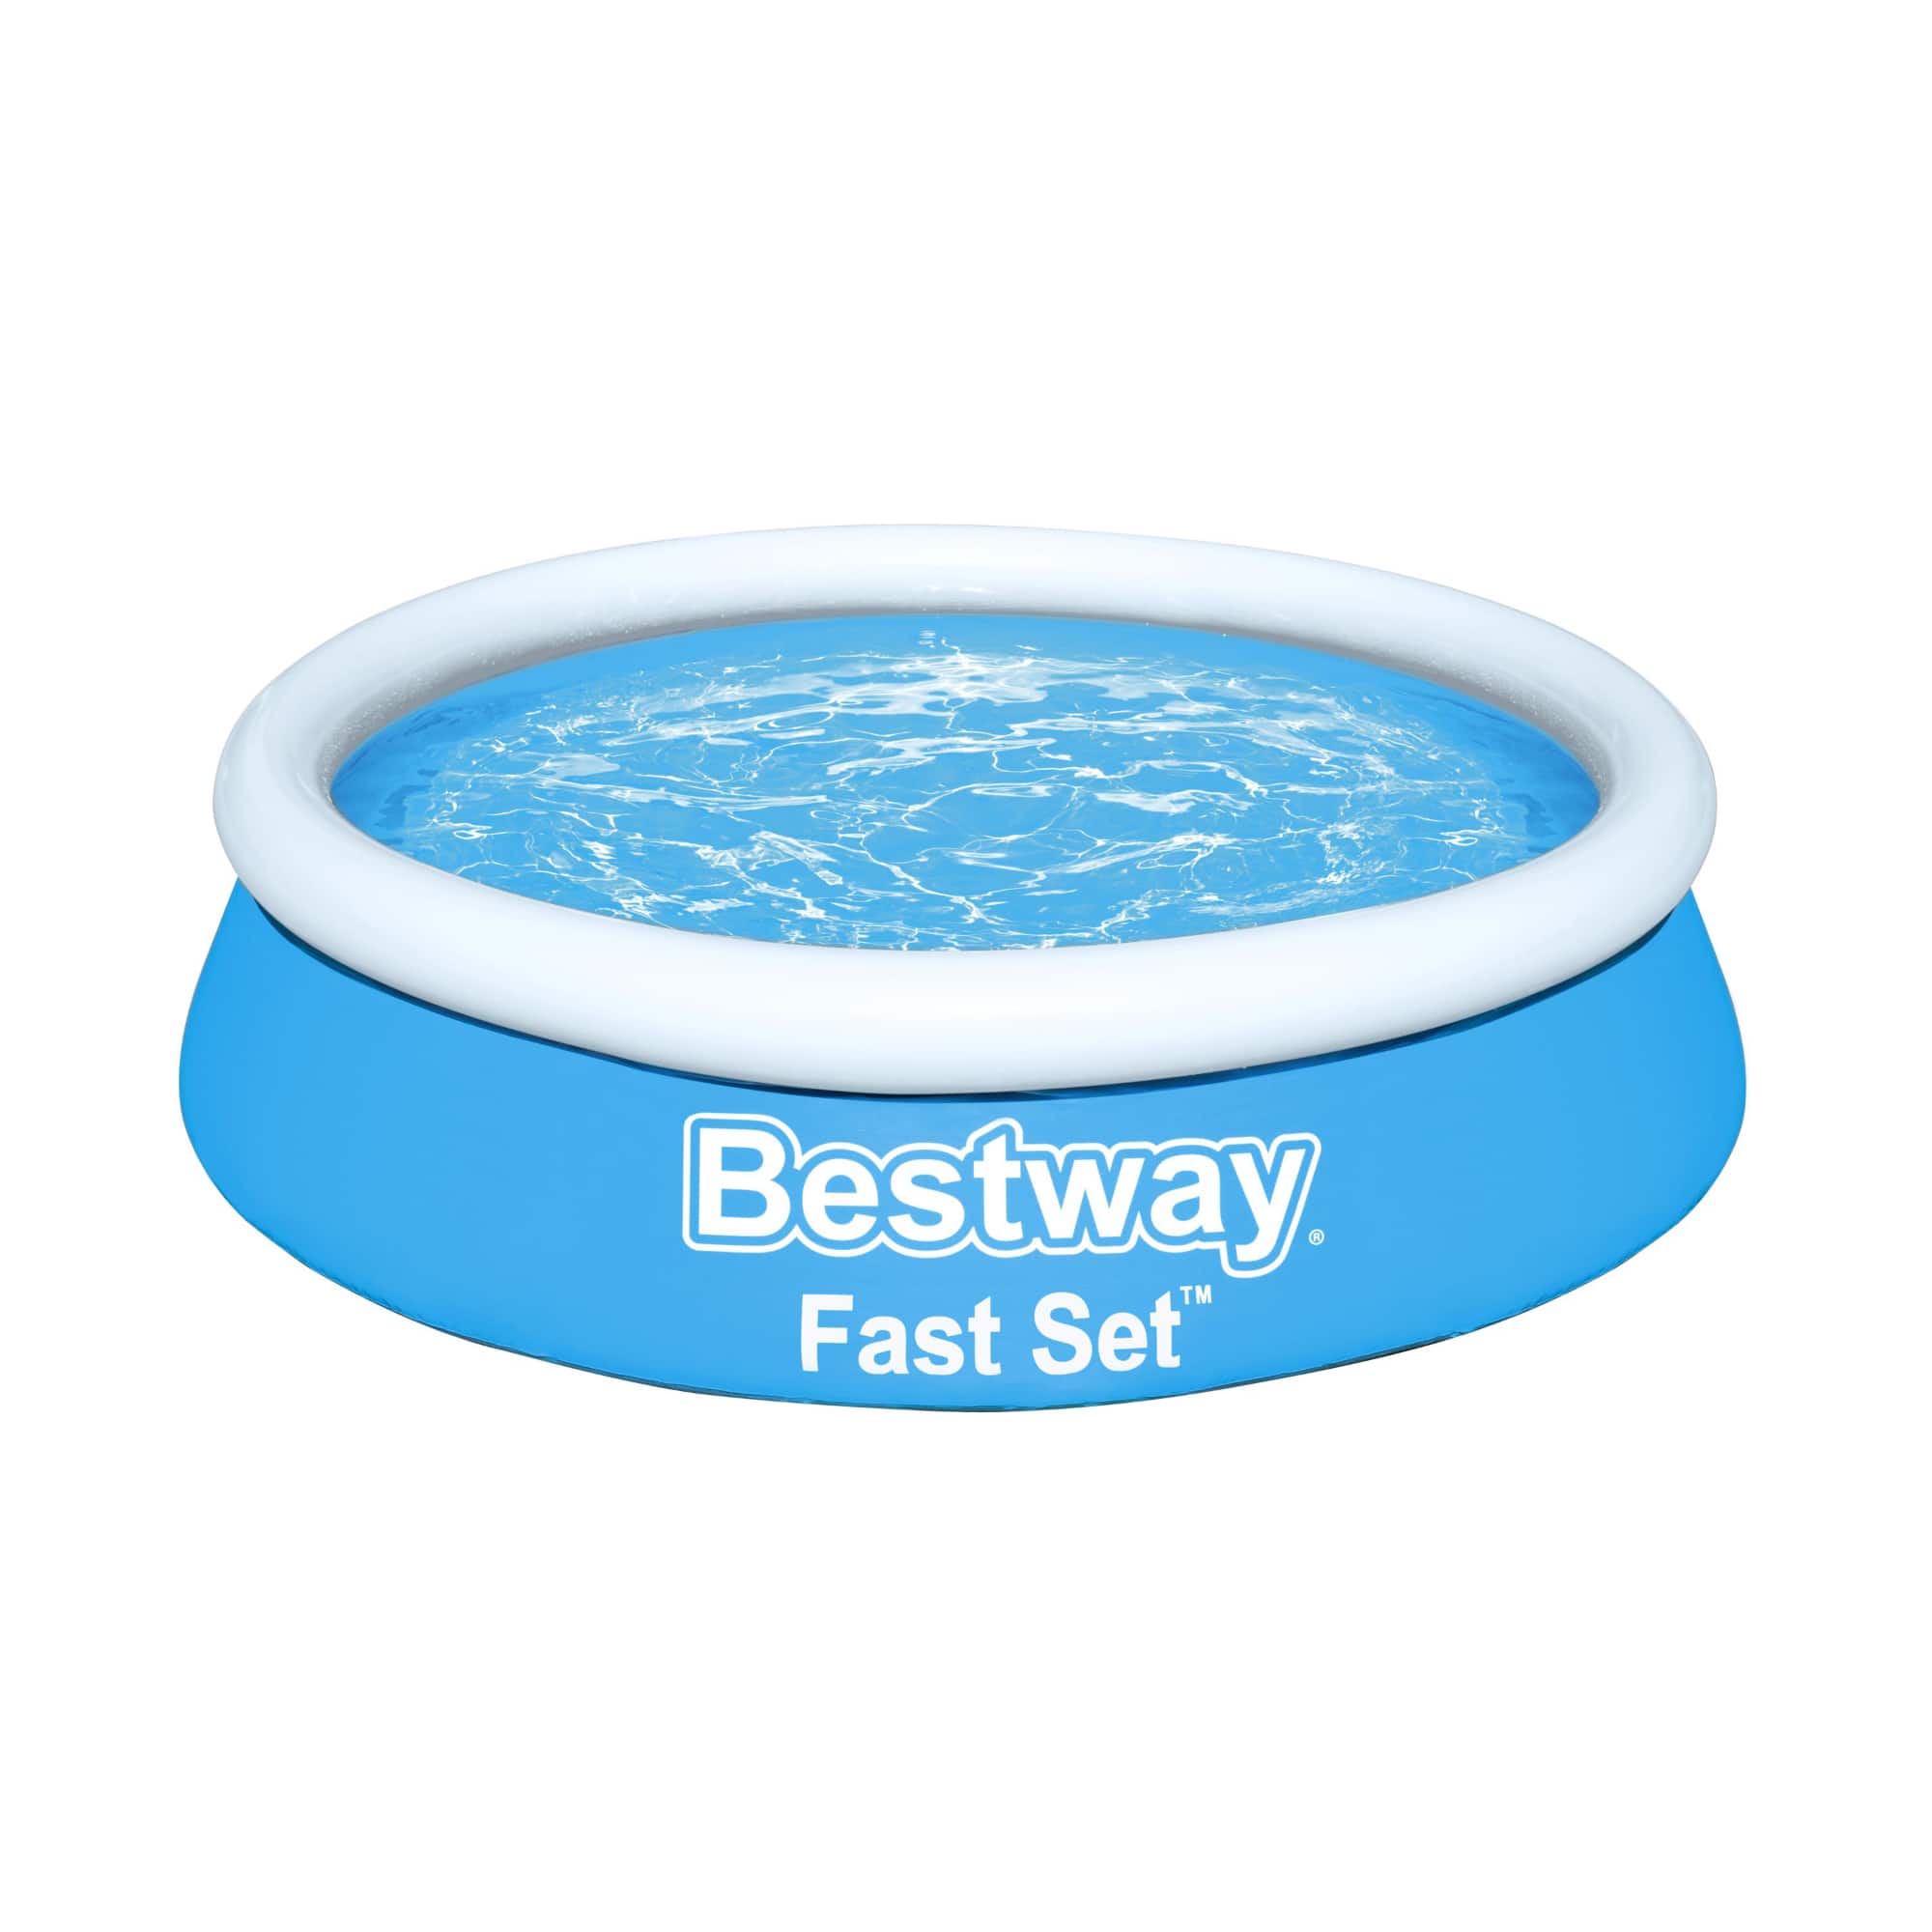 Bestway Fast Set Round Inflatable Pool